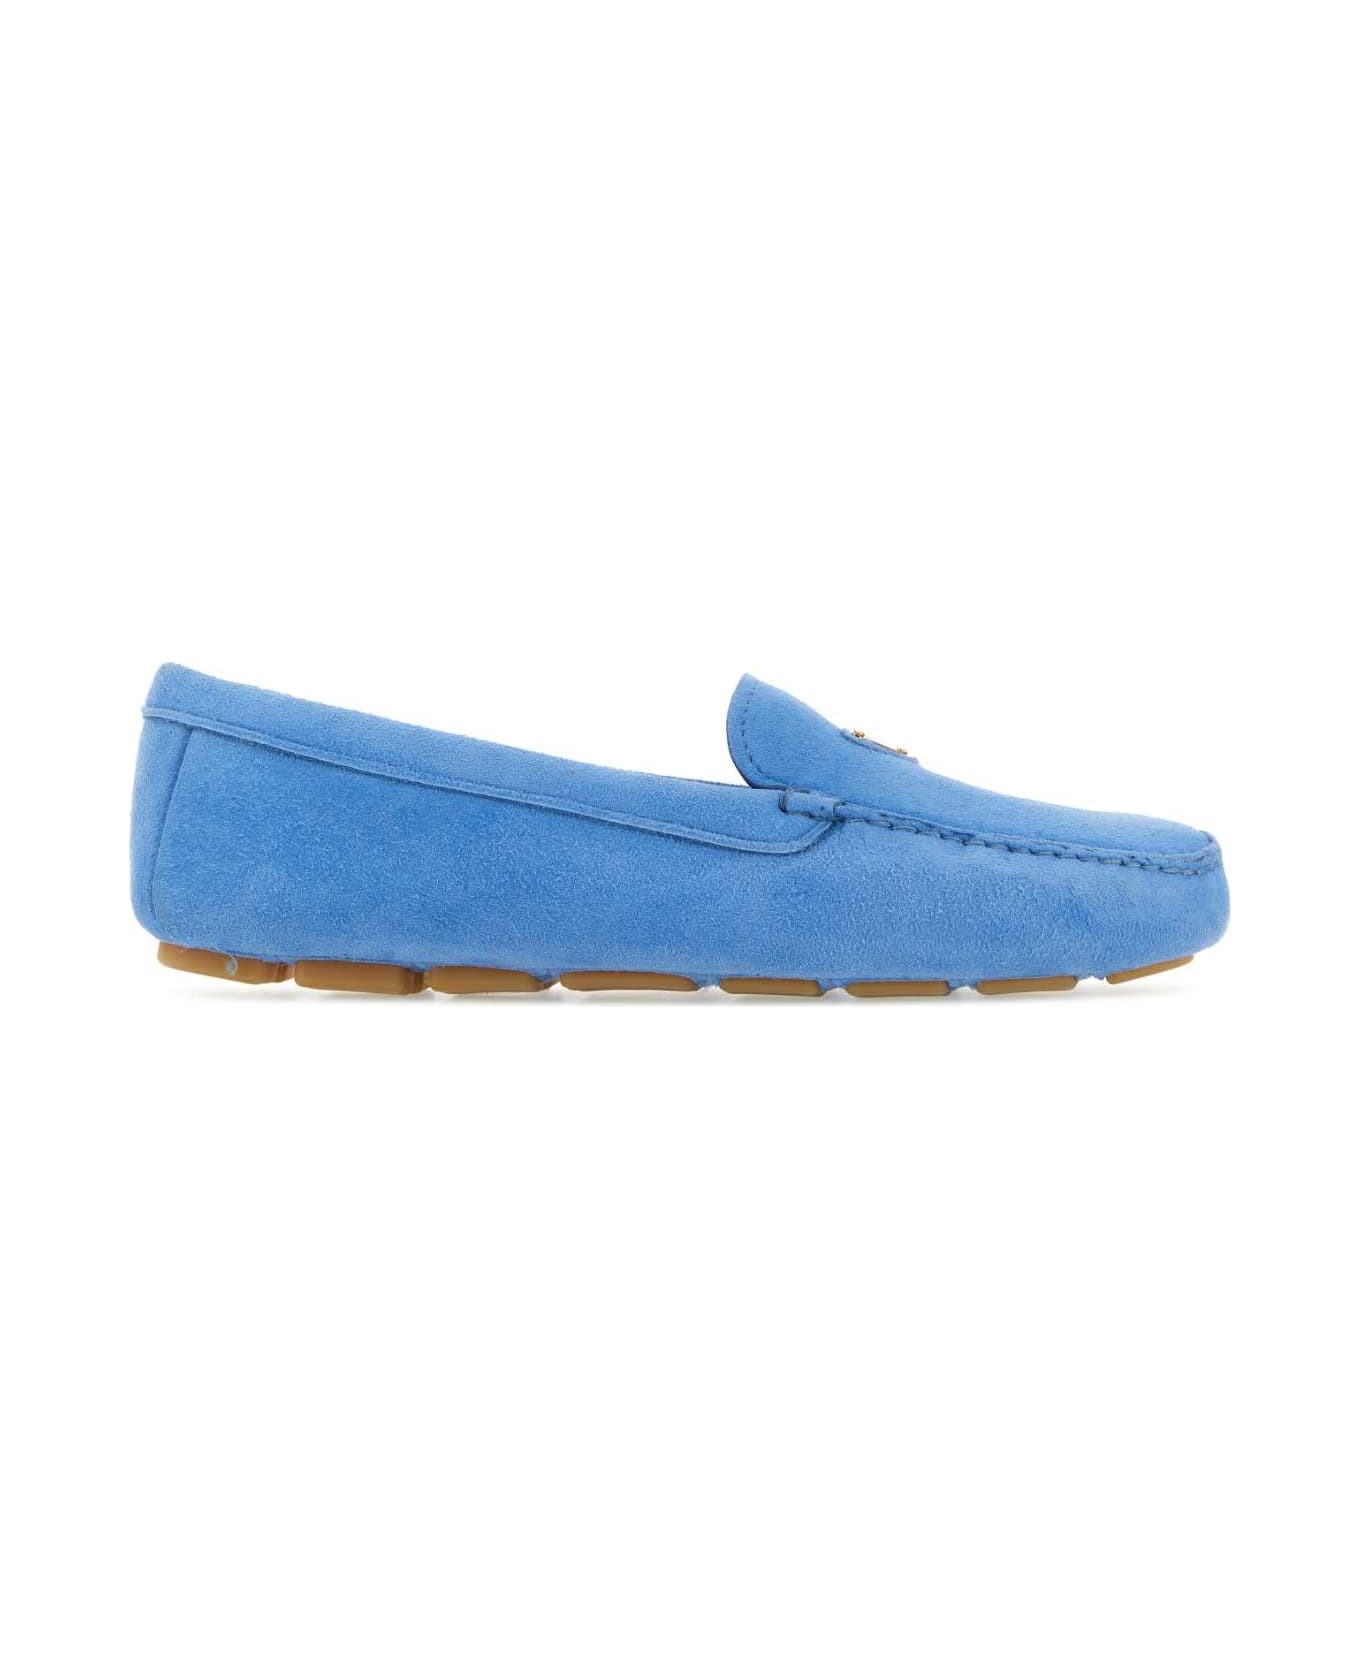 Prada Turquoise Suede Loafers - PERVINCA